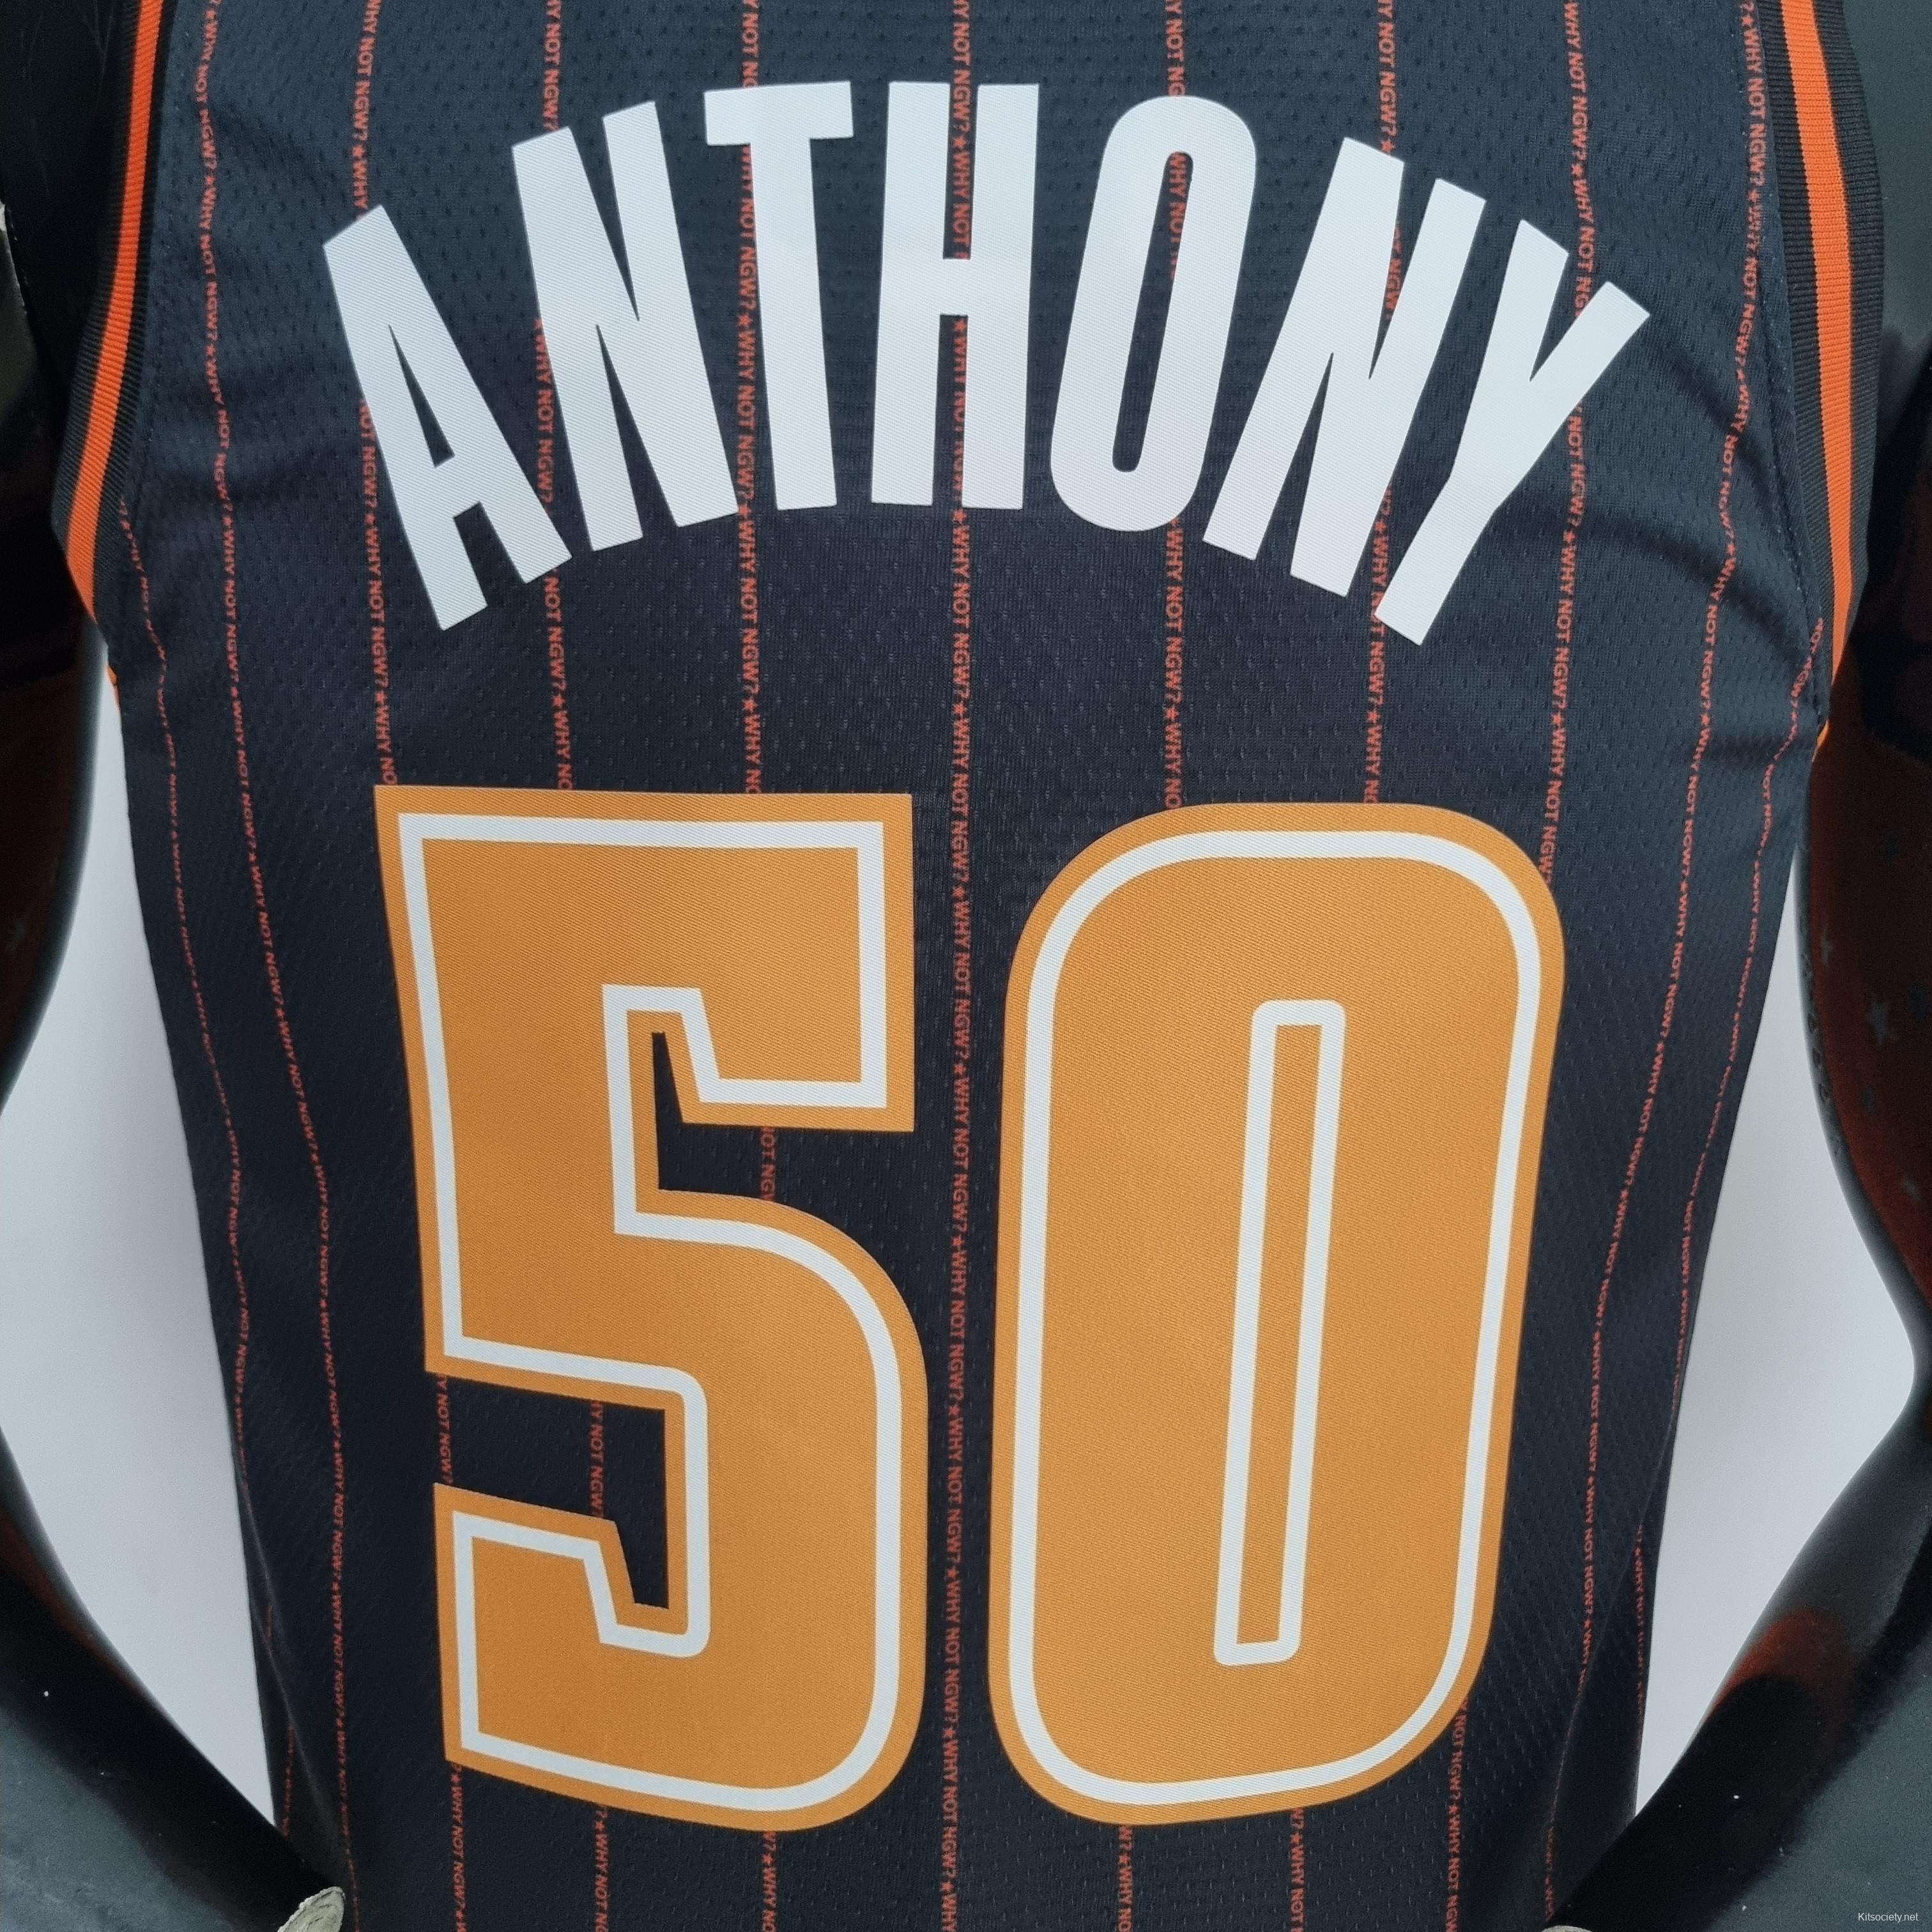 2022 Anthony #50 Orlando Magic City Edition NBA Jersey - Kitsociety